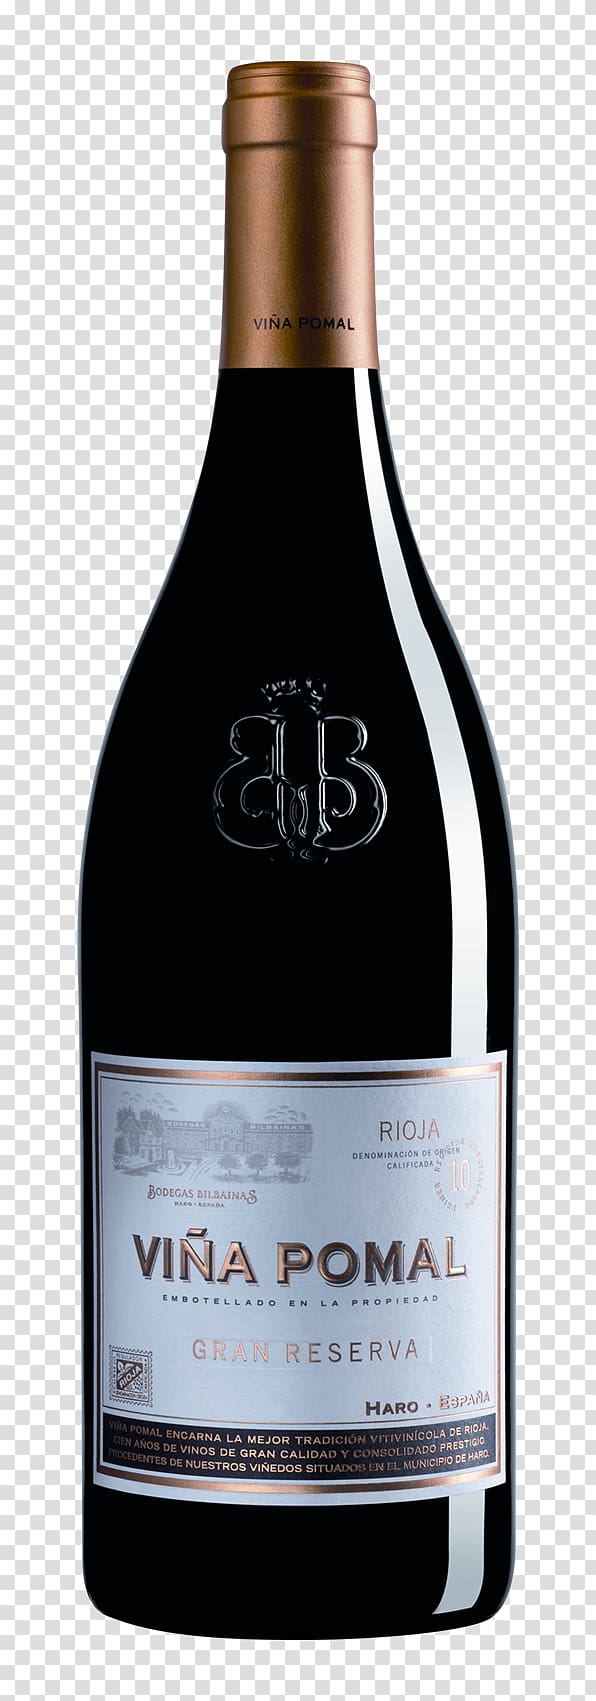 Nebbiolo Wine Barolo DOCG Valpolicella Rioja, wine transparent background PNG clipart